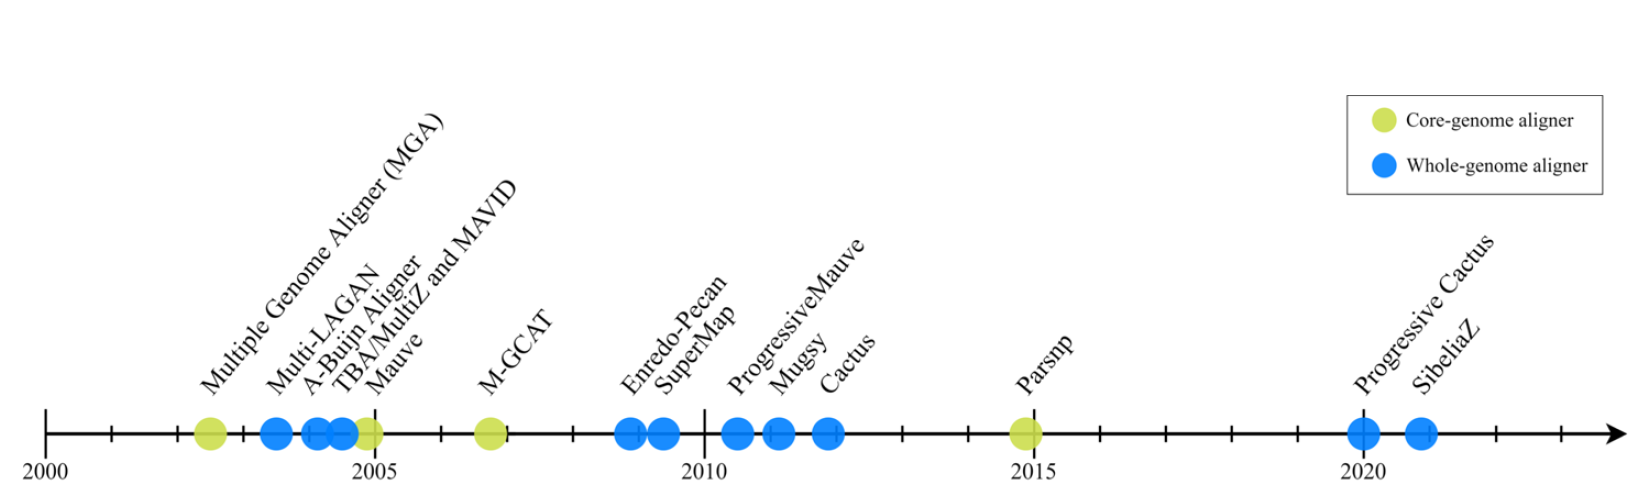 MGA工具的时间线。人类和小鼠基因组的最初测序推动了多个基因组比对工具的发展。在此之后，下一代基因组比对工具（从Enredo-Pecan开始，到Cactus结束）被开发出来，随后经过了6年的静默期，Parsnp成为2012年至2019年之间发布的为数不多的工具之一。